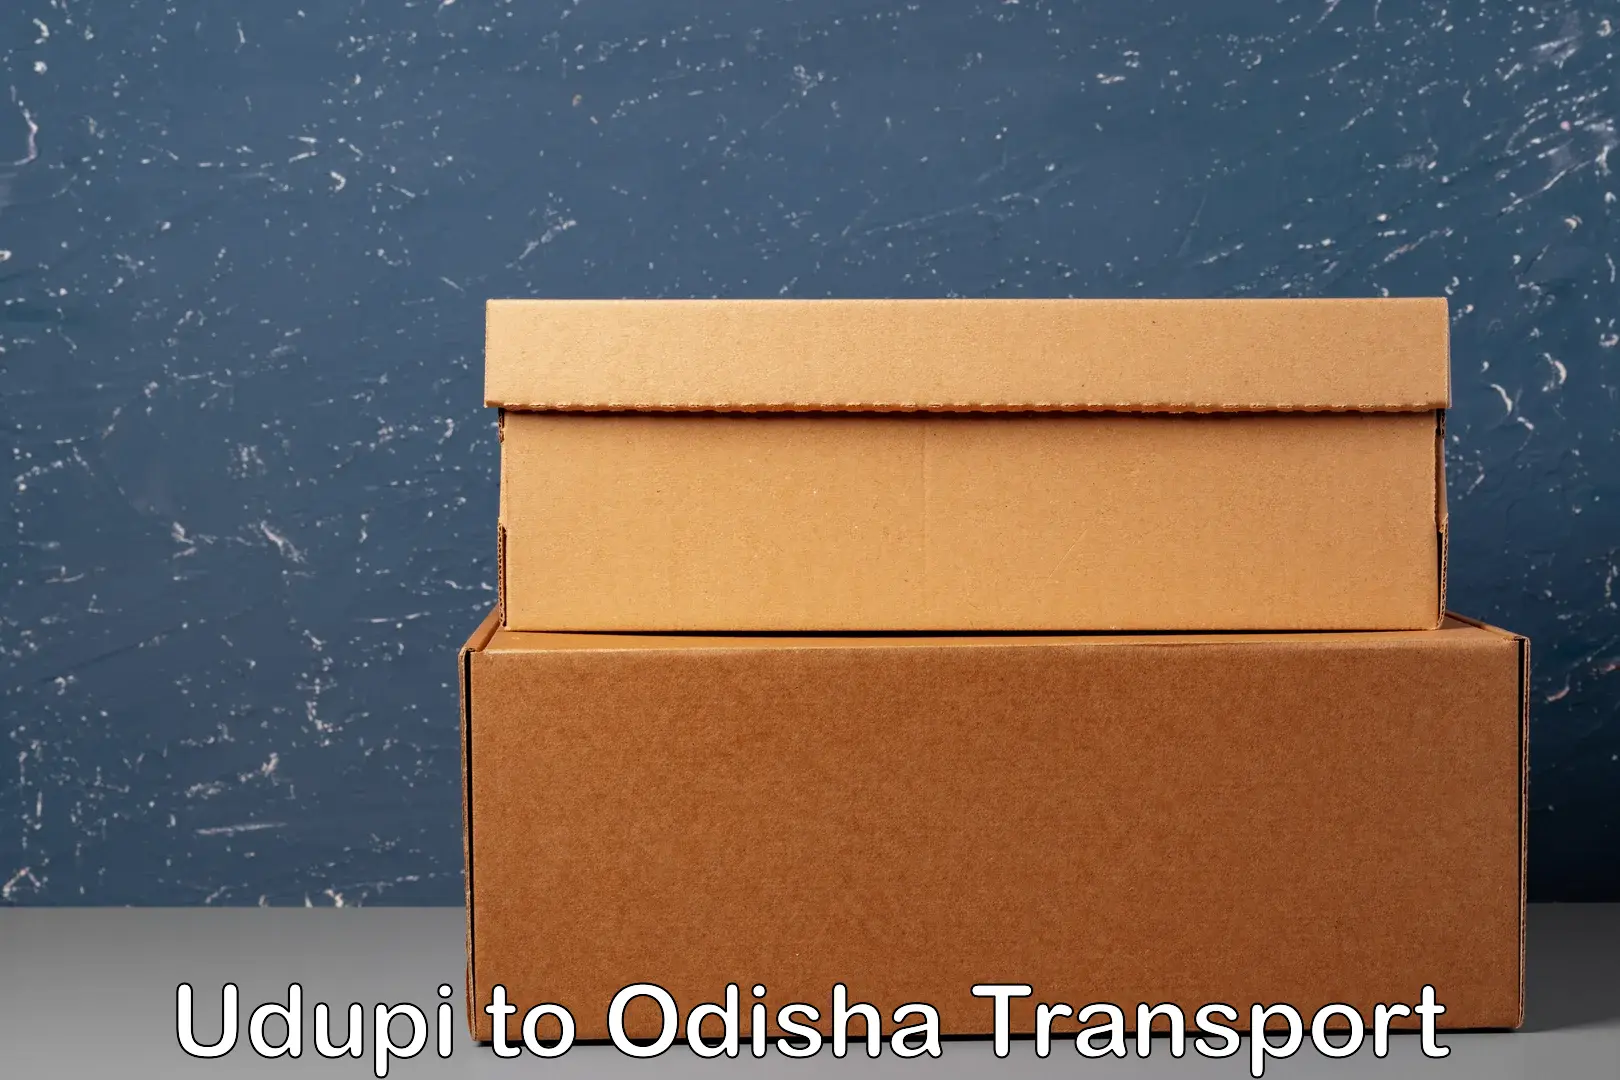 Cargo transport services Udupi to Odisha